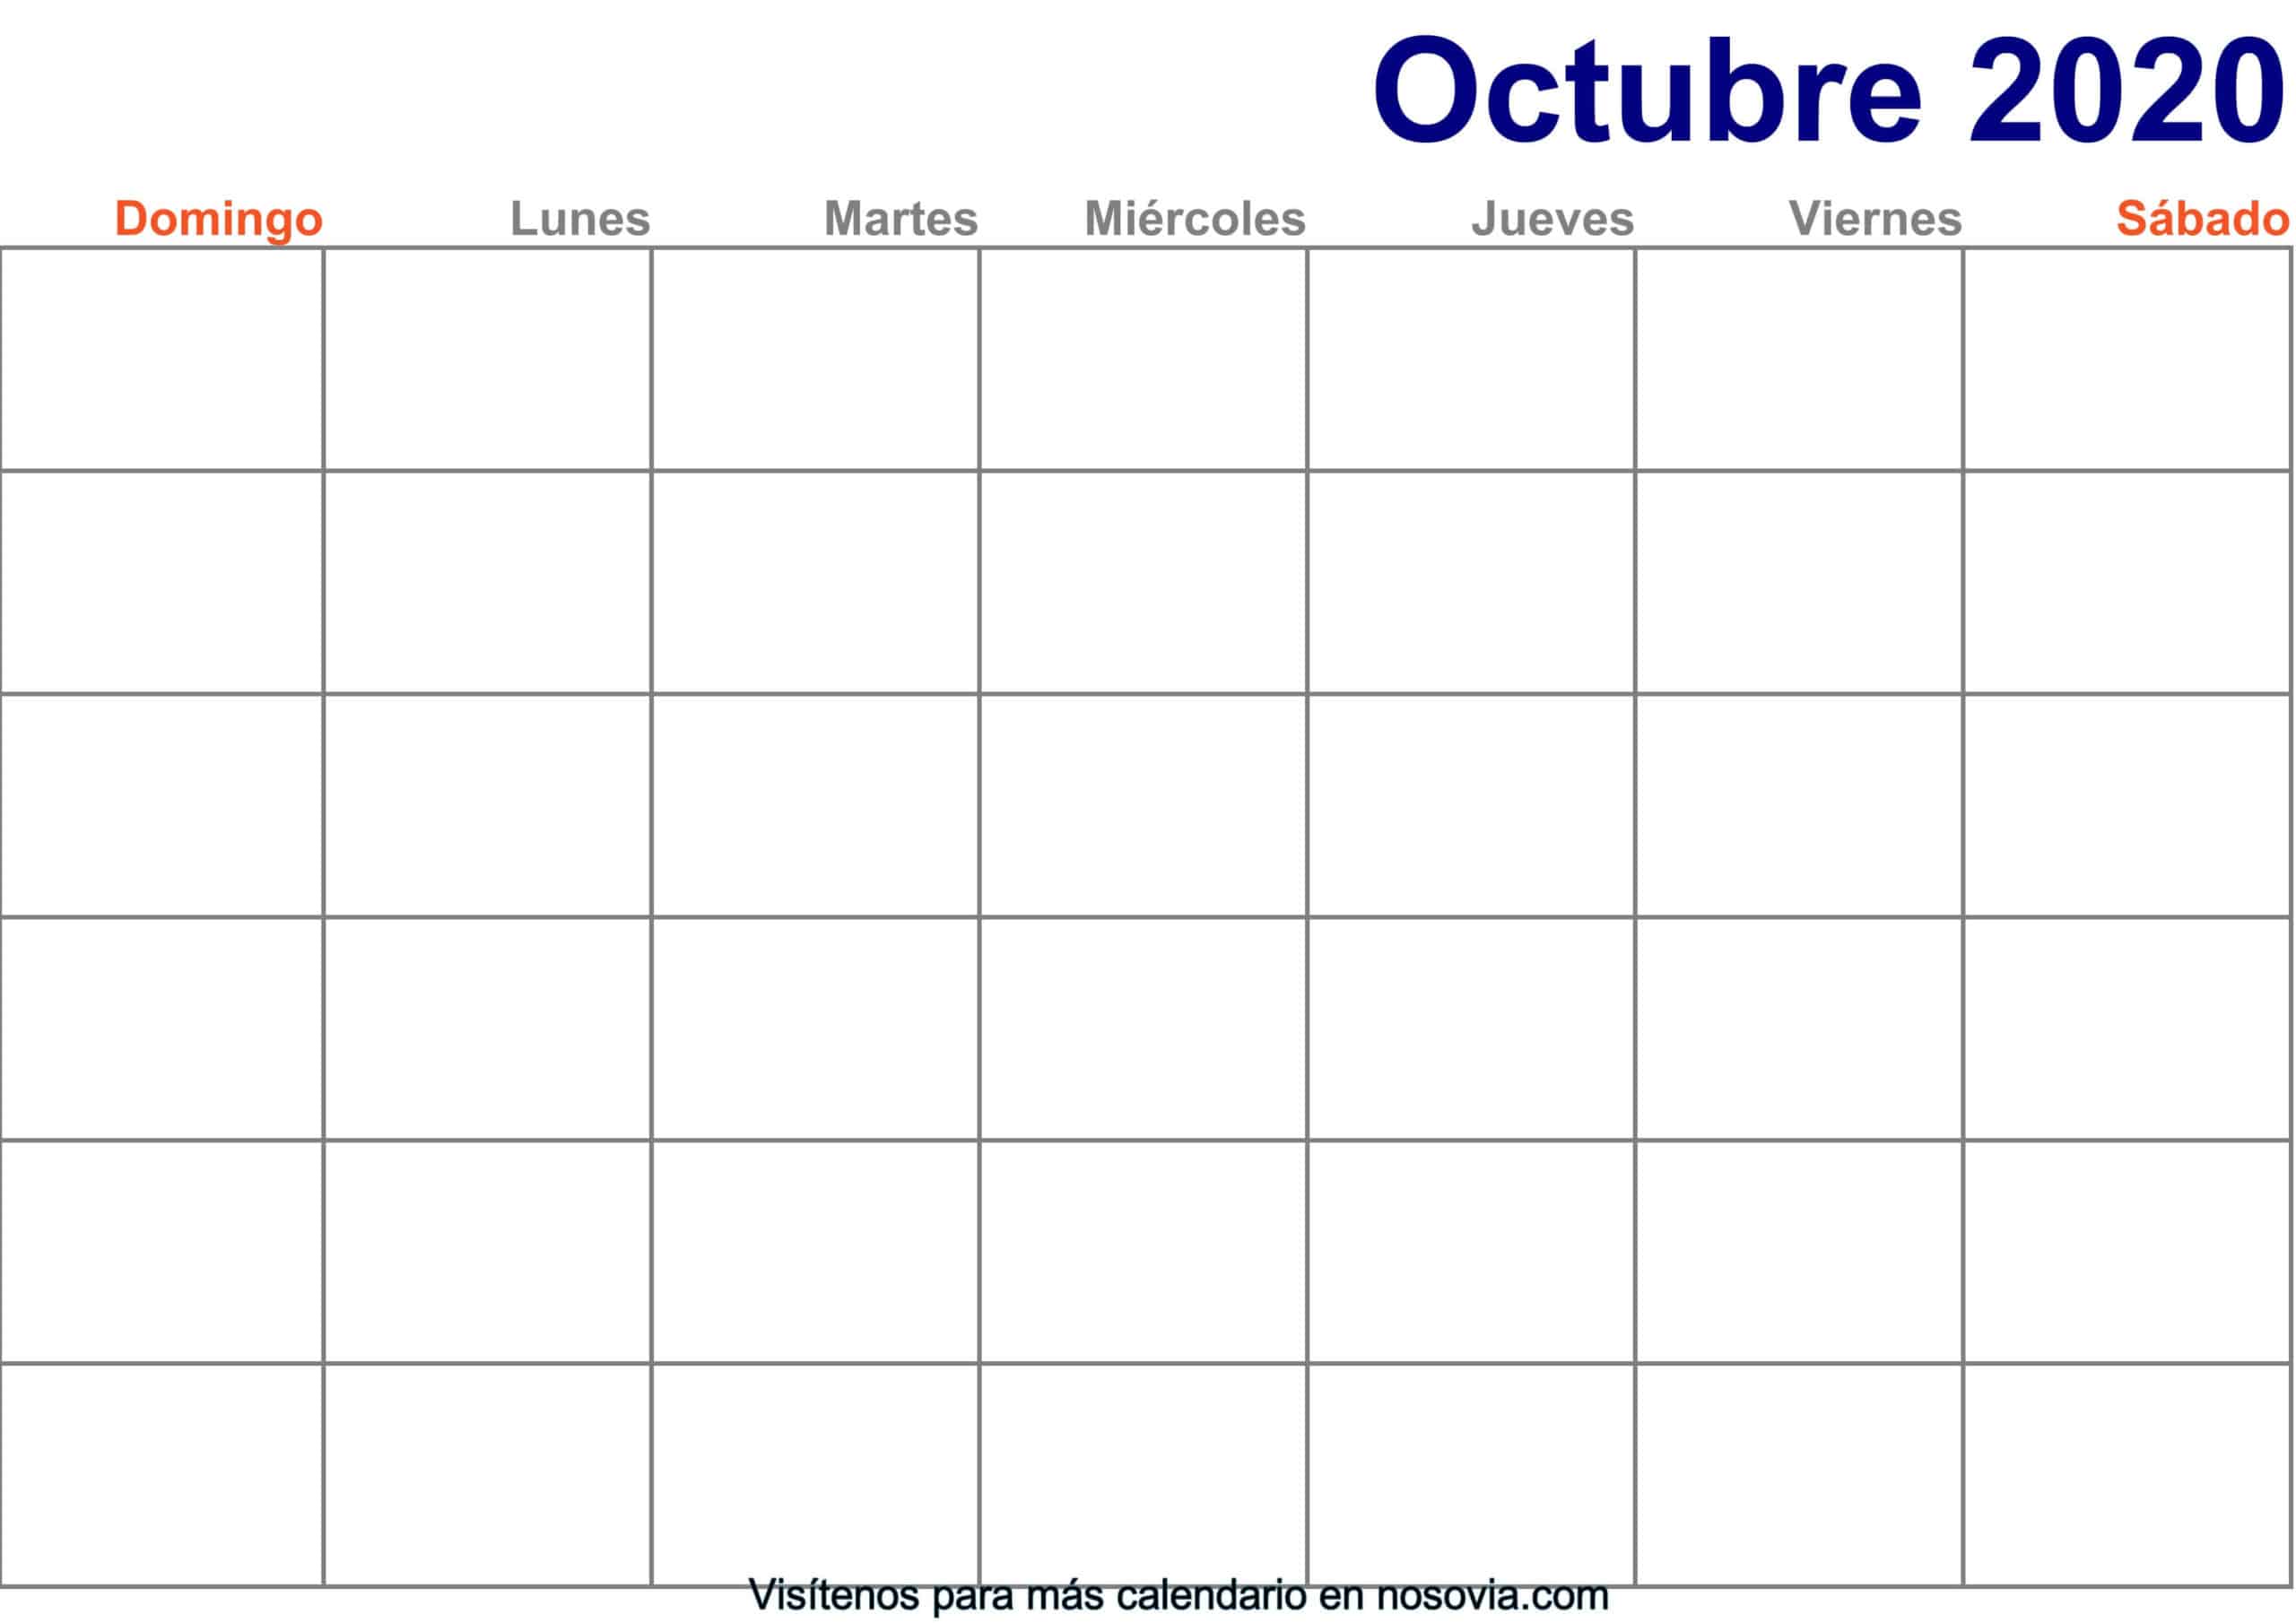 Calendario-octubre-2020-en-blanco-Imprimir-gratis